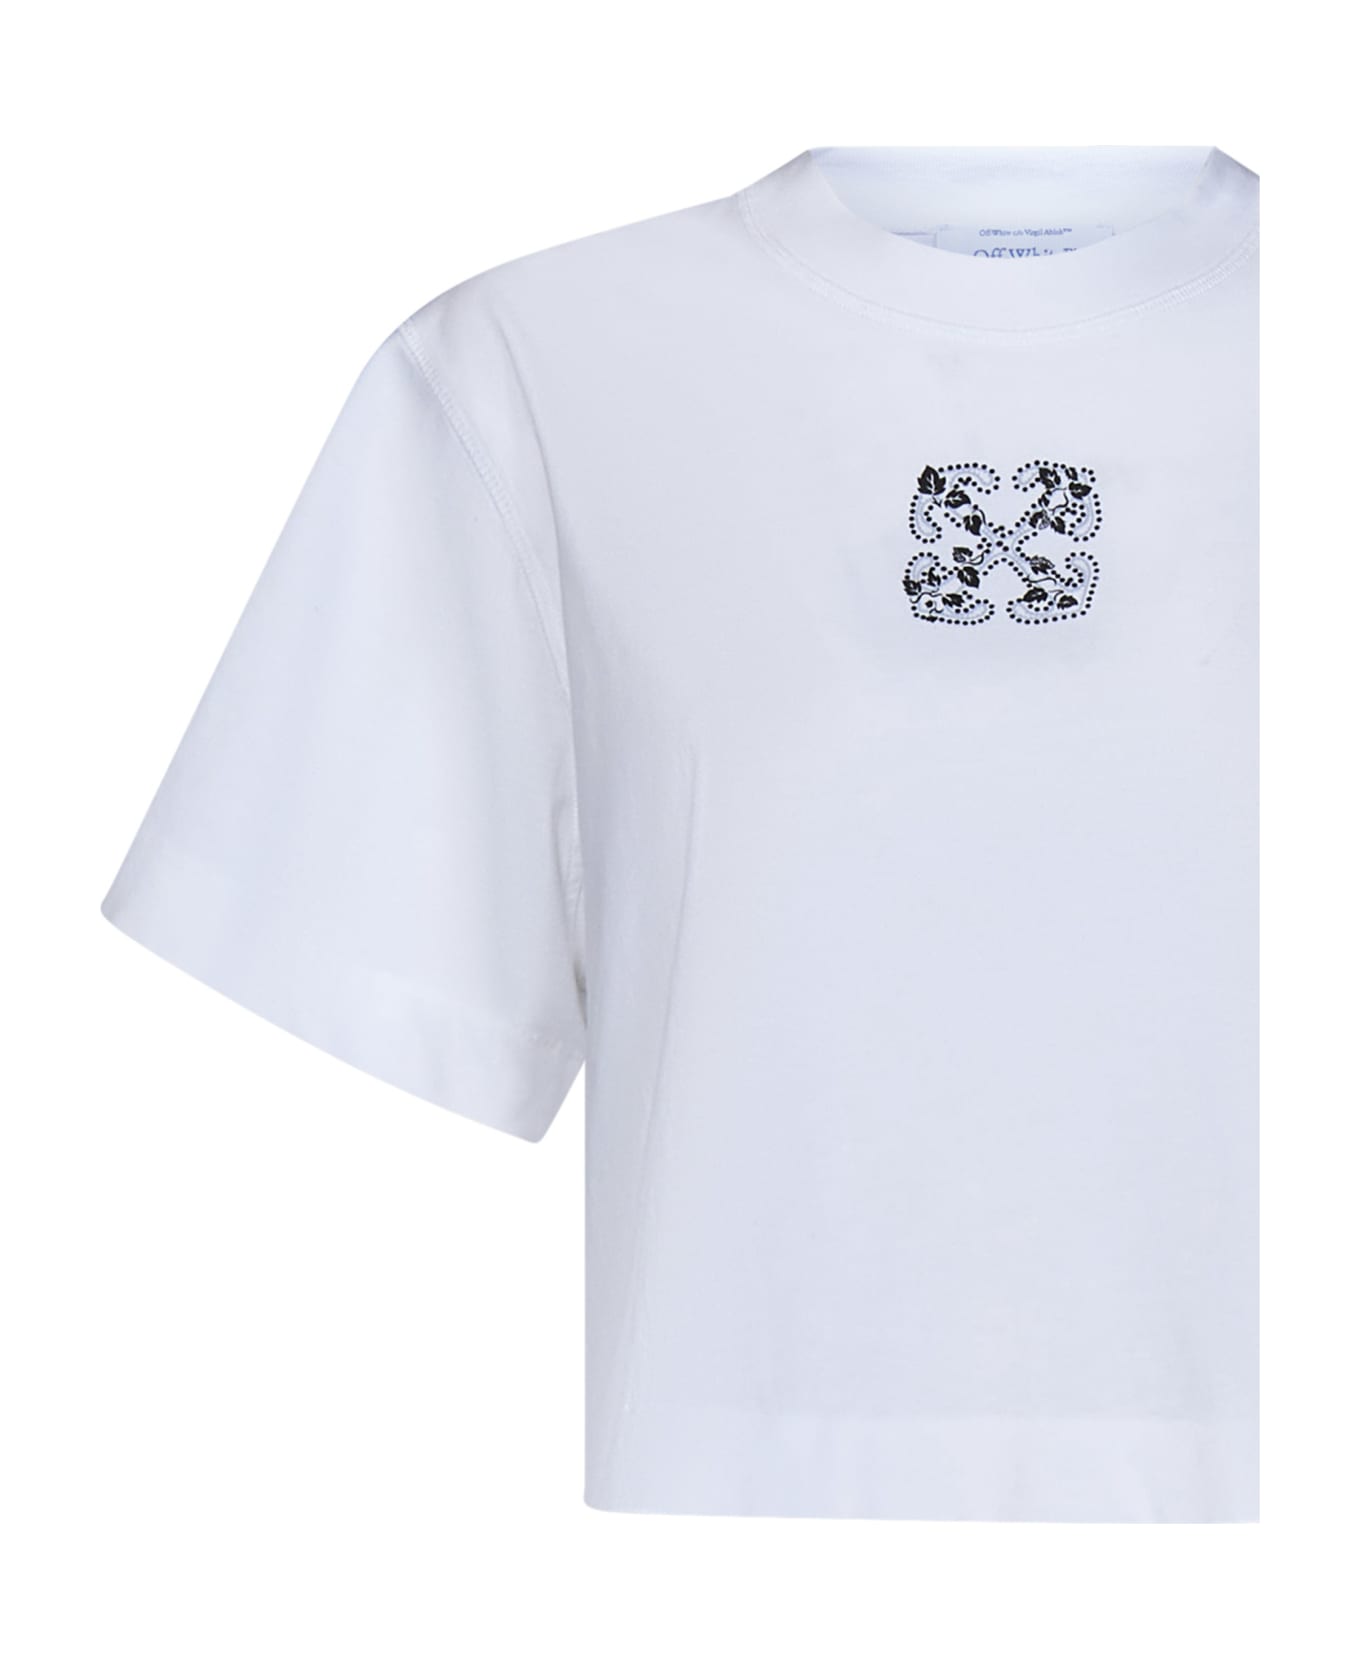 Off-White T-shirt - White